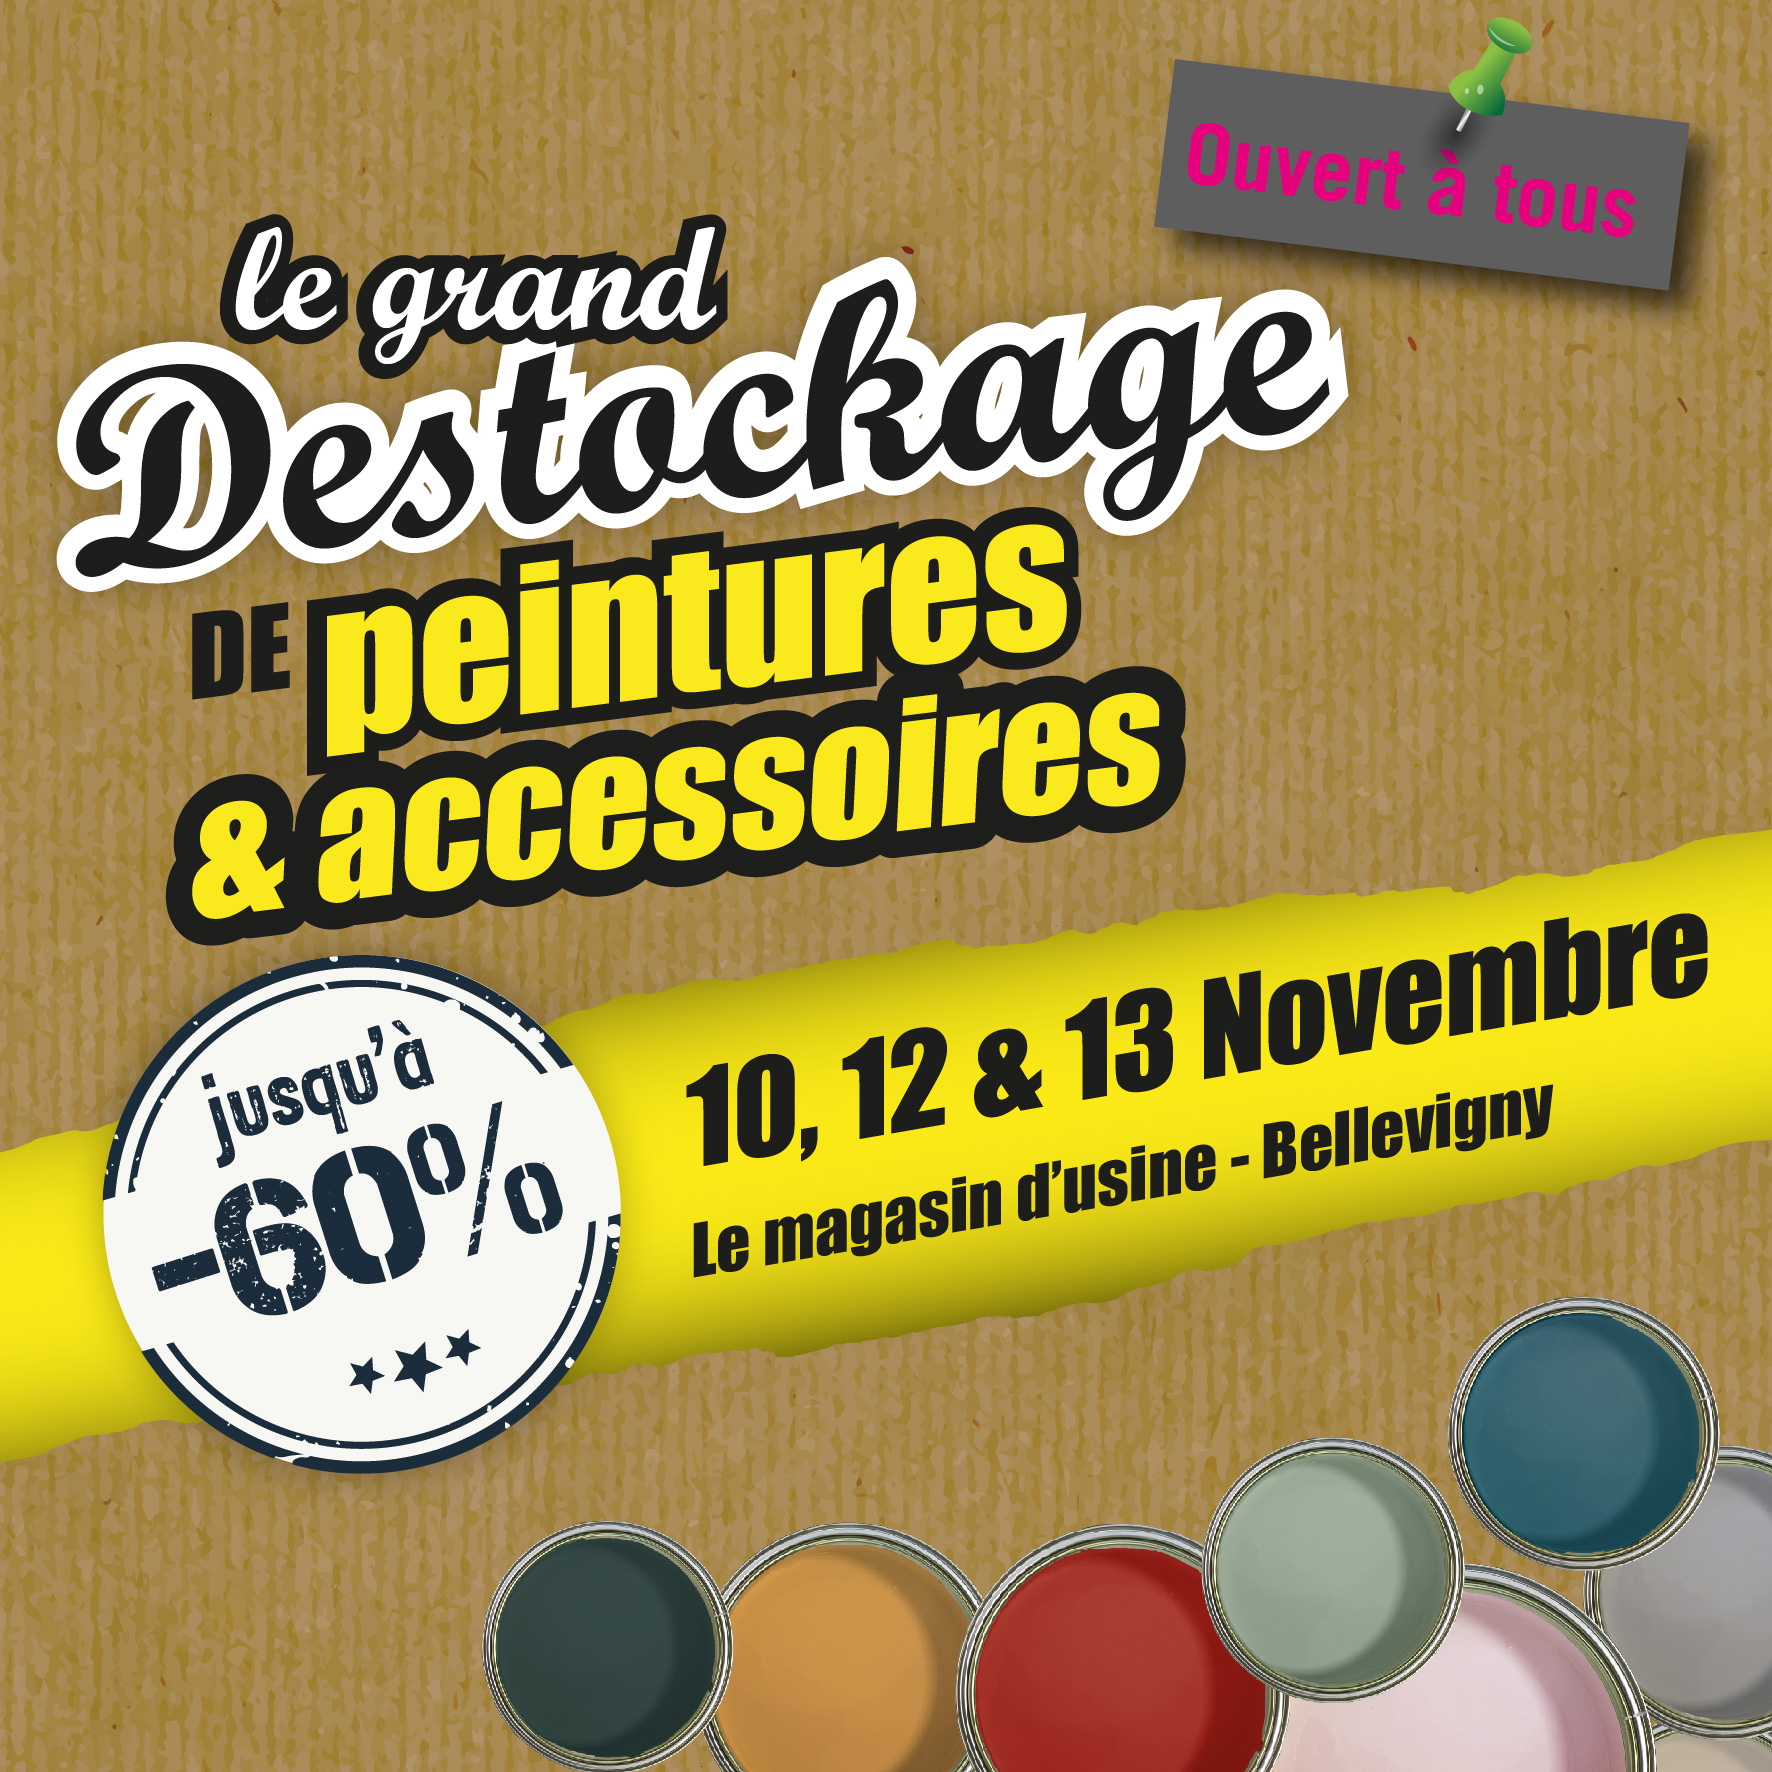 Le grand déstockage de peintures et accessoires aura lieu les 10, 12 et 13 Novembre à Bellevigny (85)